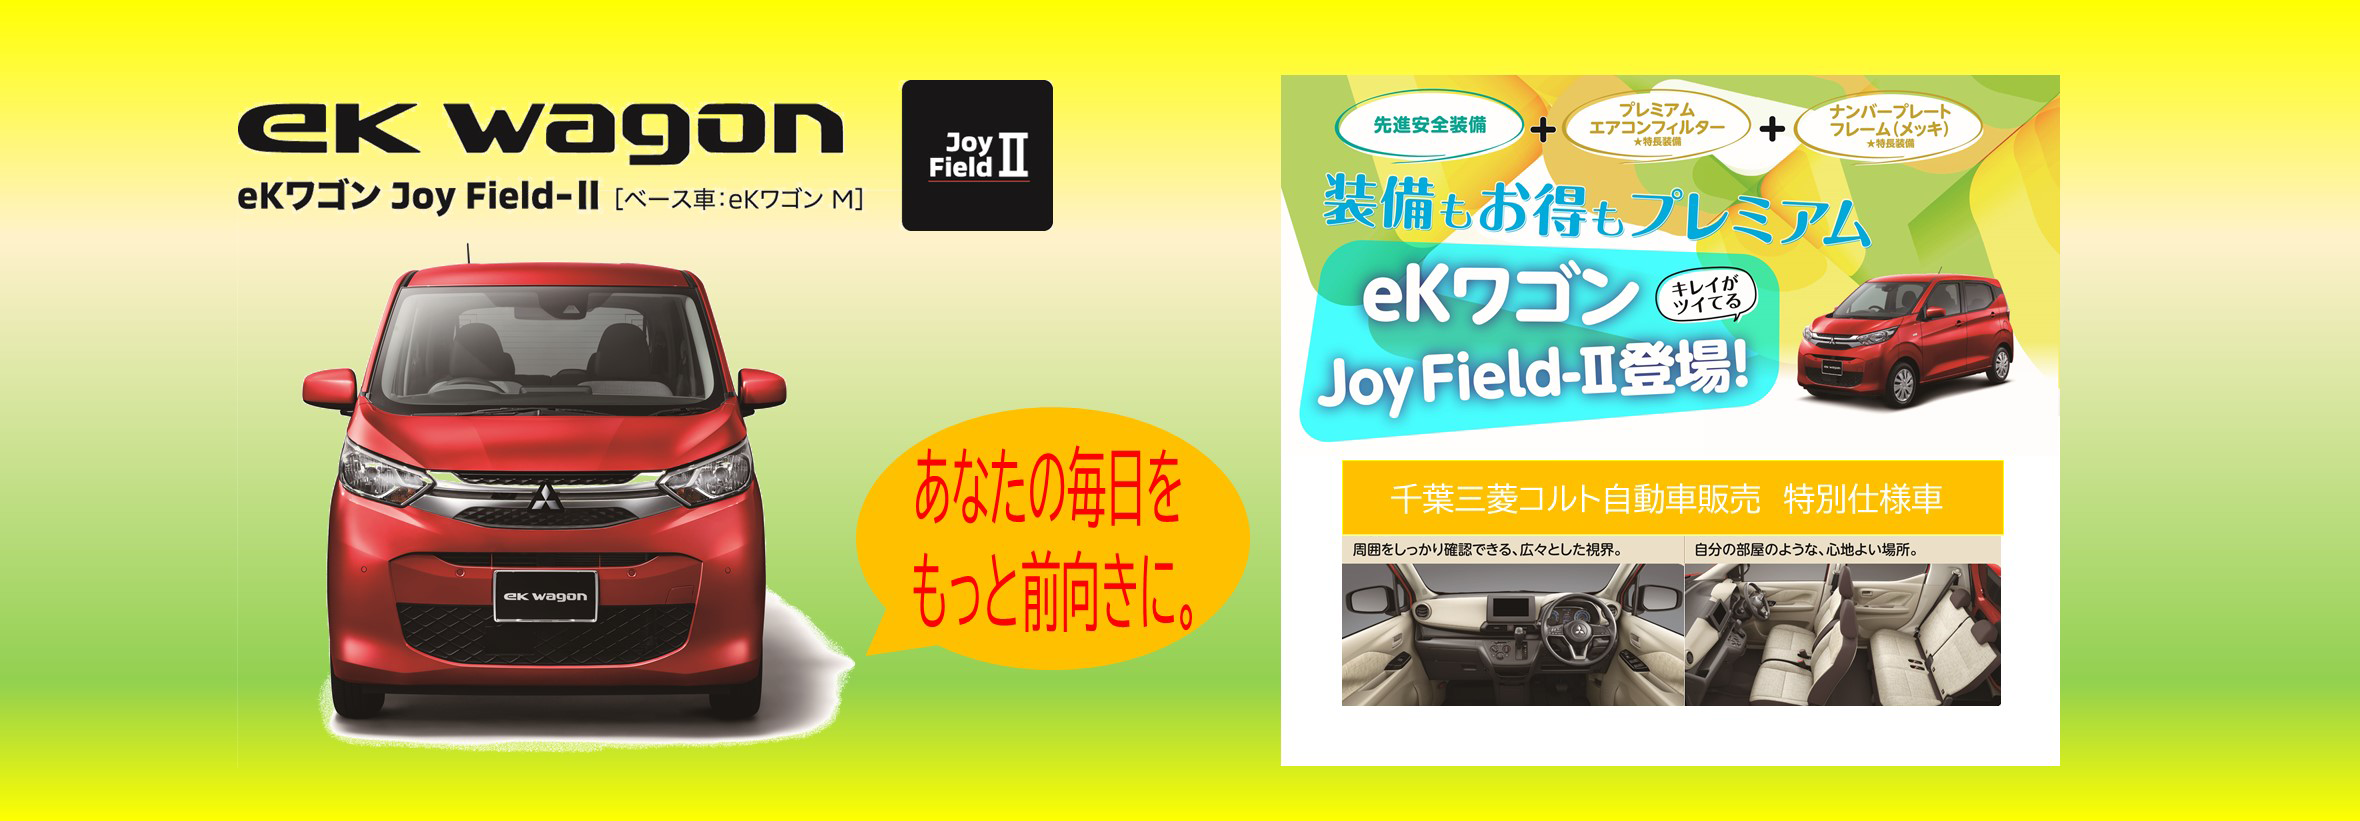 eKワゴン Joy Field 登場!